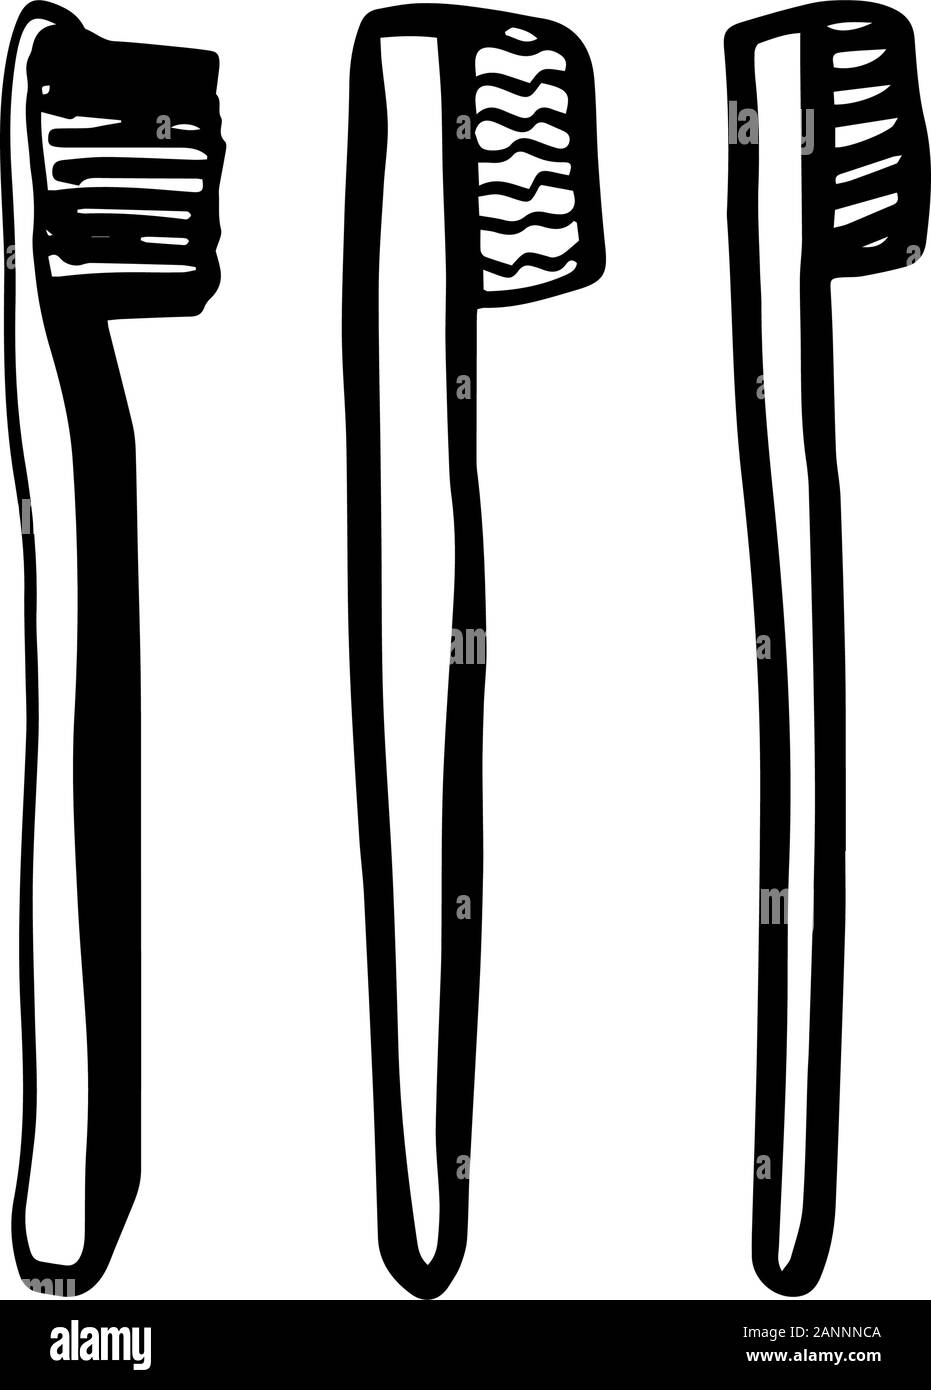 Ensemble de brosses à dents en bambou style doodle isolé sur fond blanc. Concept zéro déchet. Contour Vector illustration dessiné à la main. Le recyclage. Refuser Illustration de Vecteur